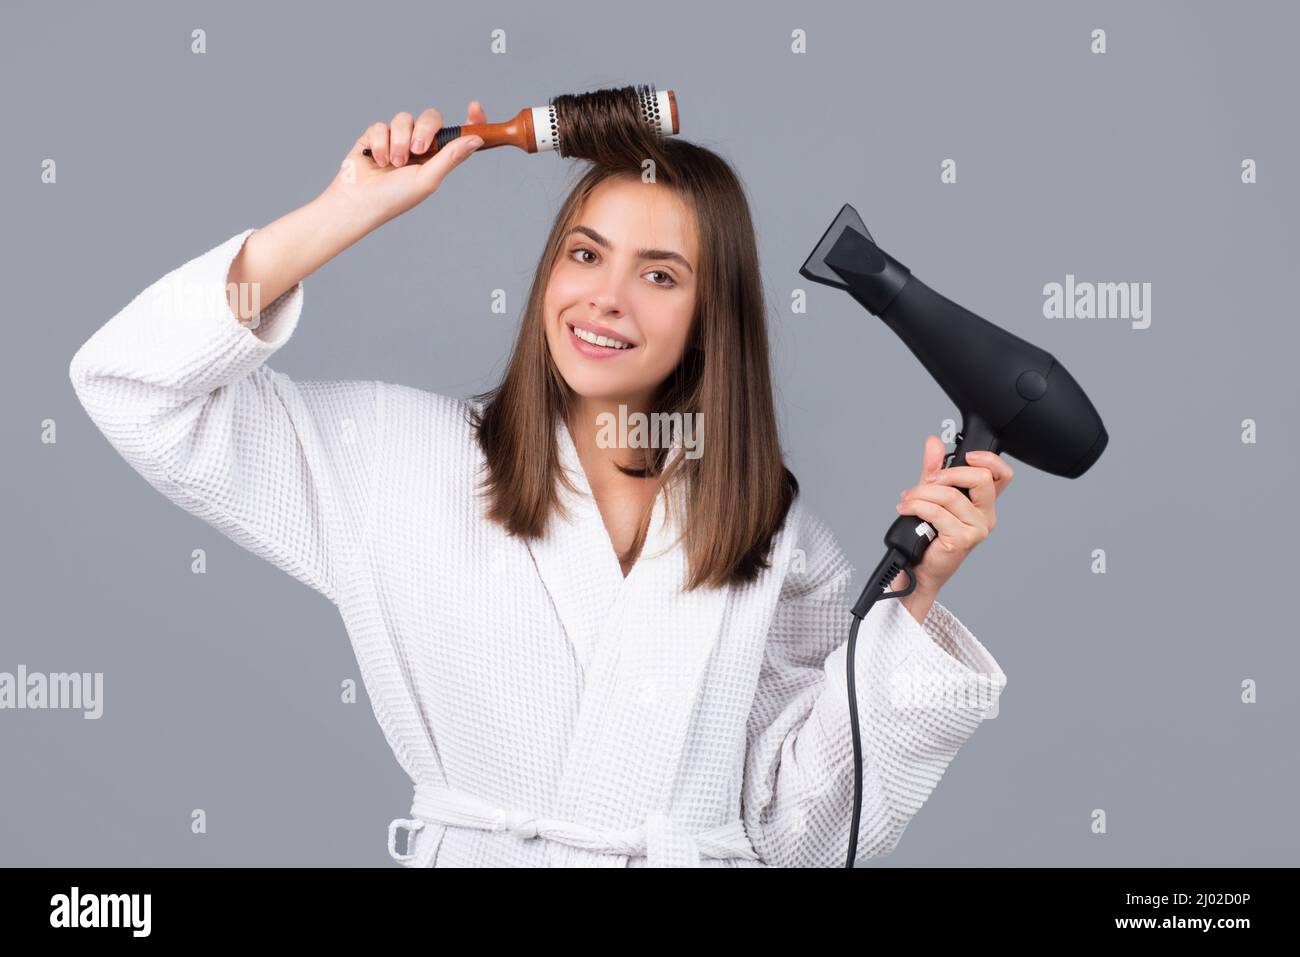 Frau kämmt Haare. Porträt des weiblichen Modells mit einem Kamm Bürsten  Haar und Trockner Haar mit Haartrockner. Mädchen mit Fön und Haarbürste,  Haarpflege und Stockfotografie - Alamy